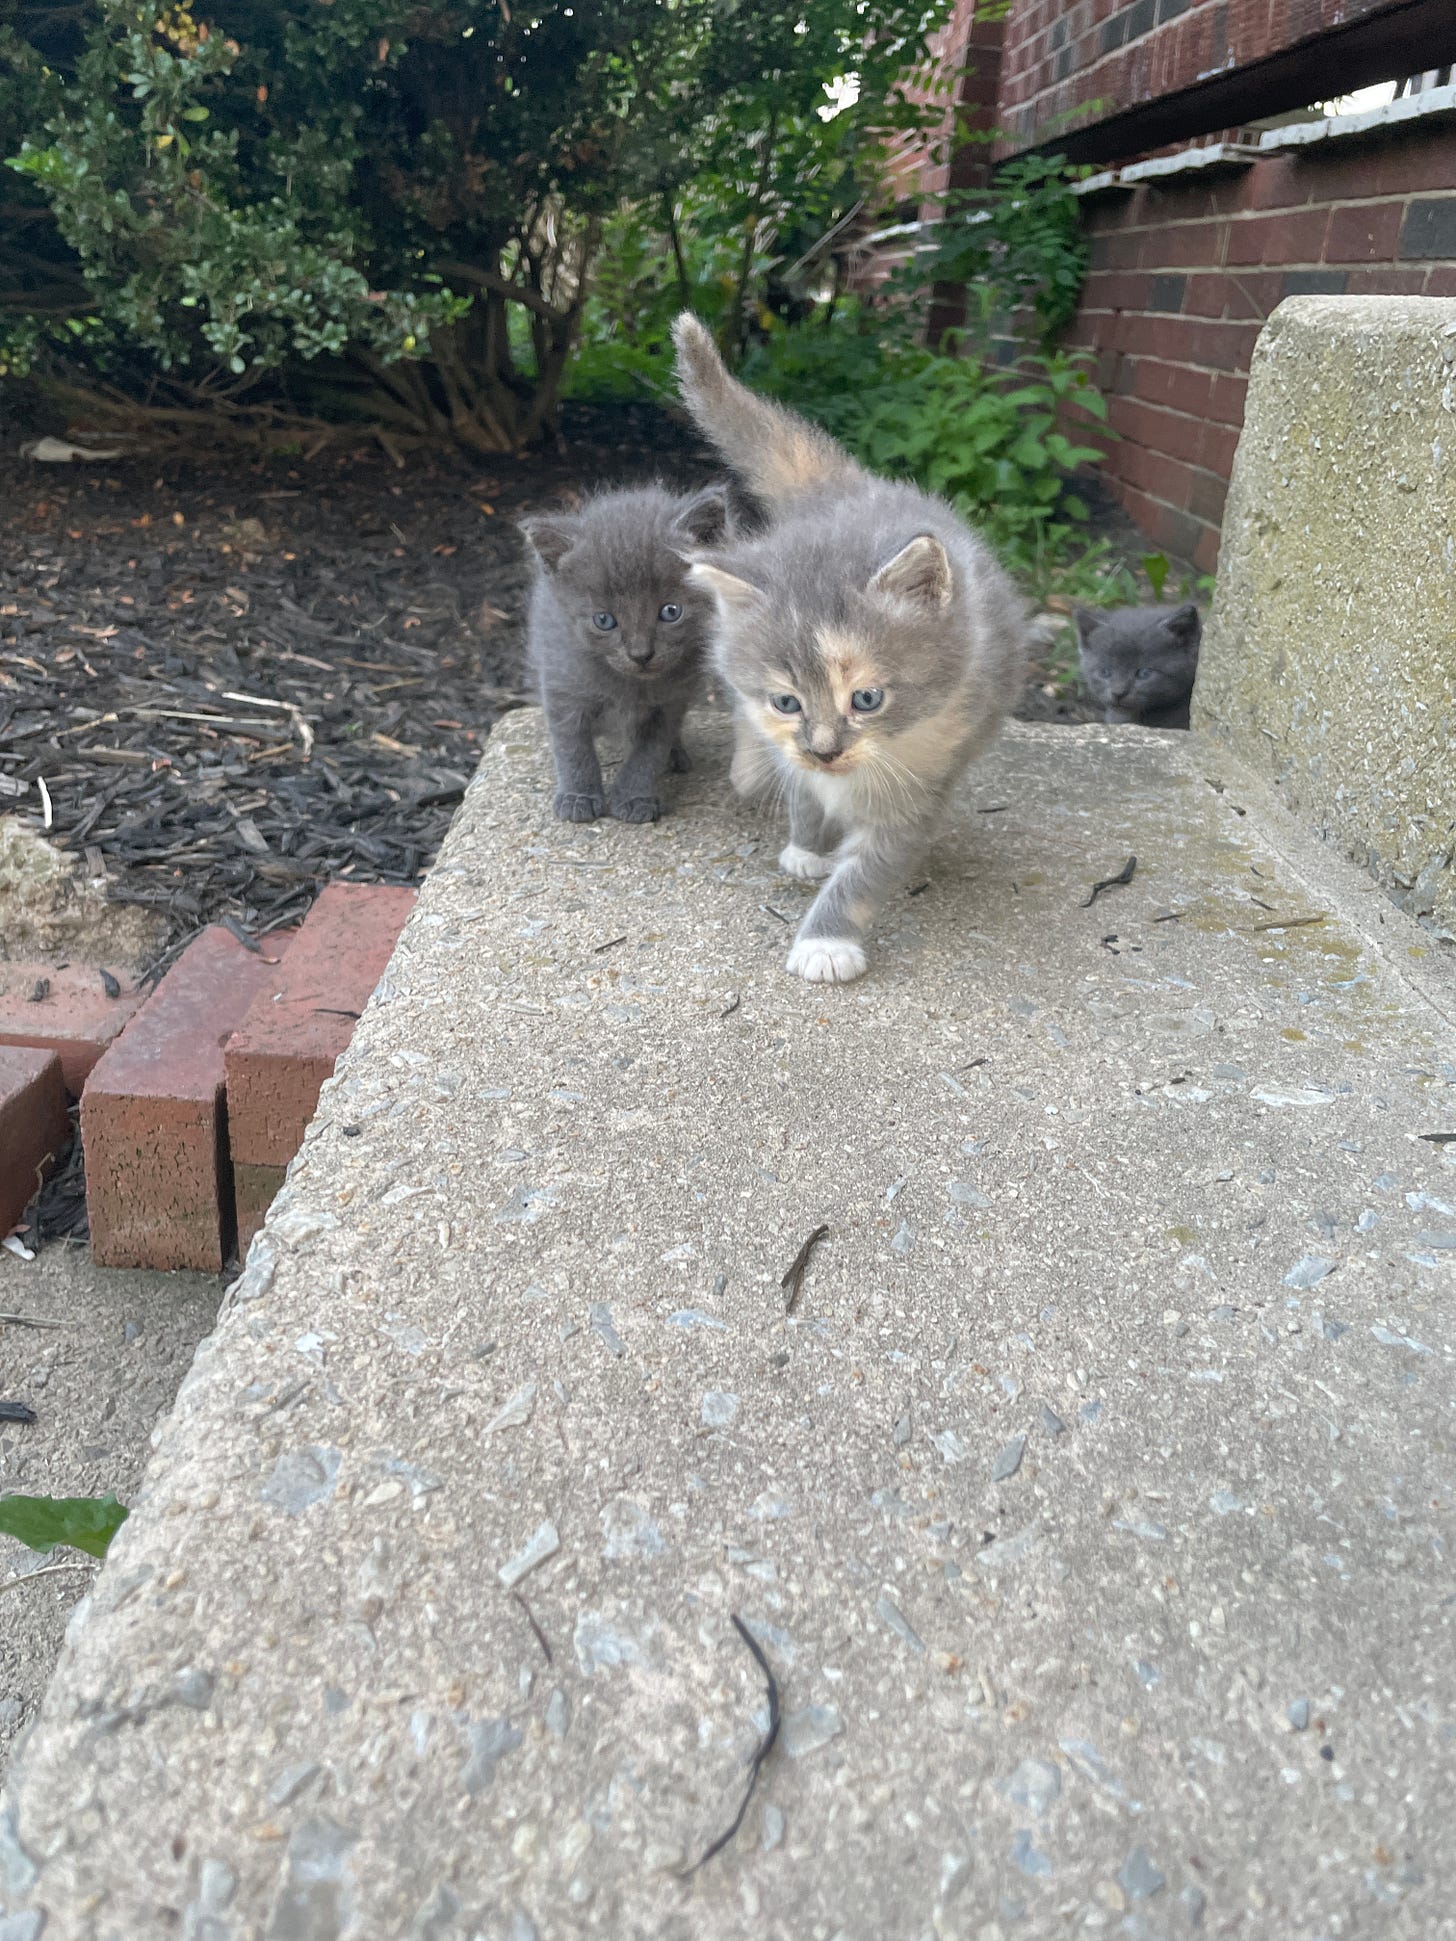 Two tiny kittens walking toward the camera.